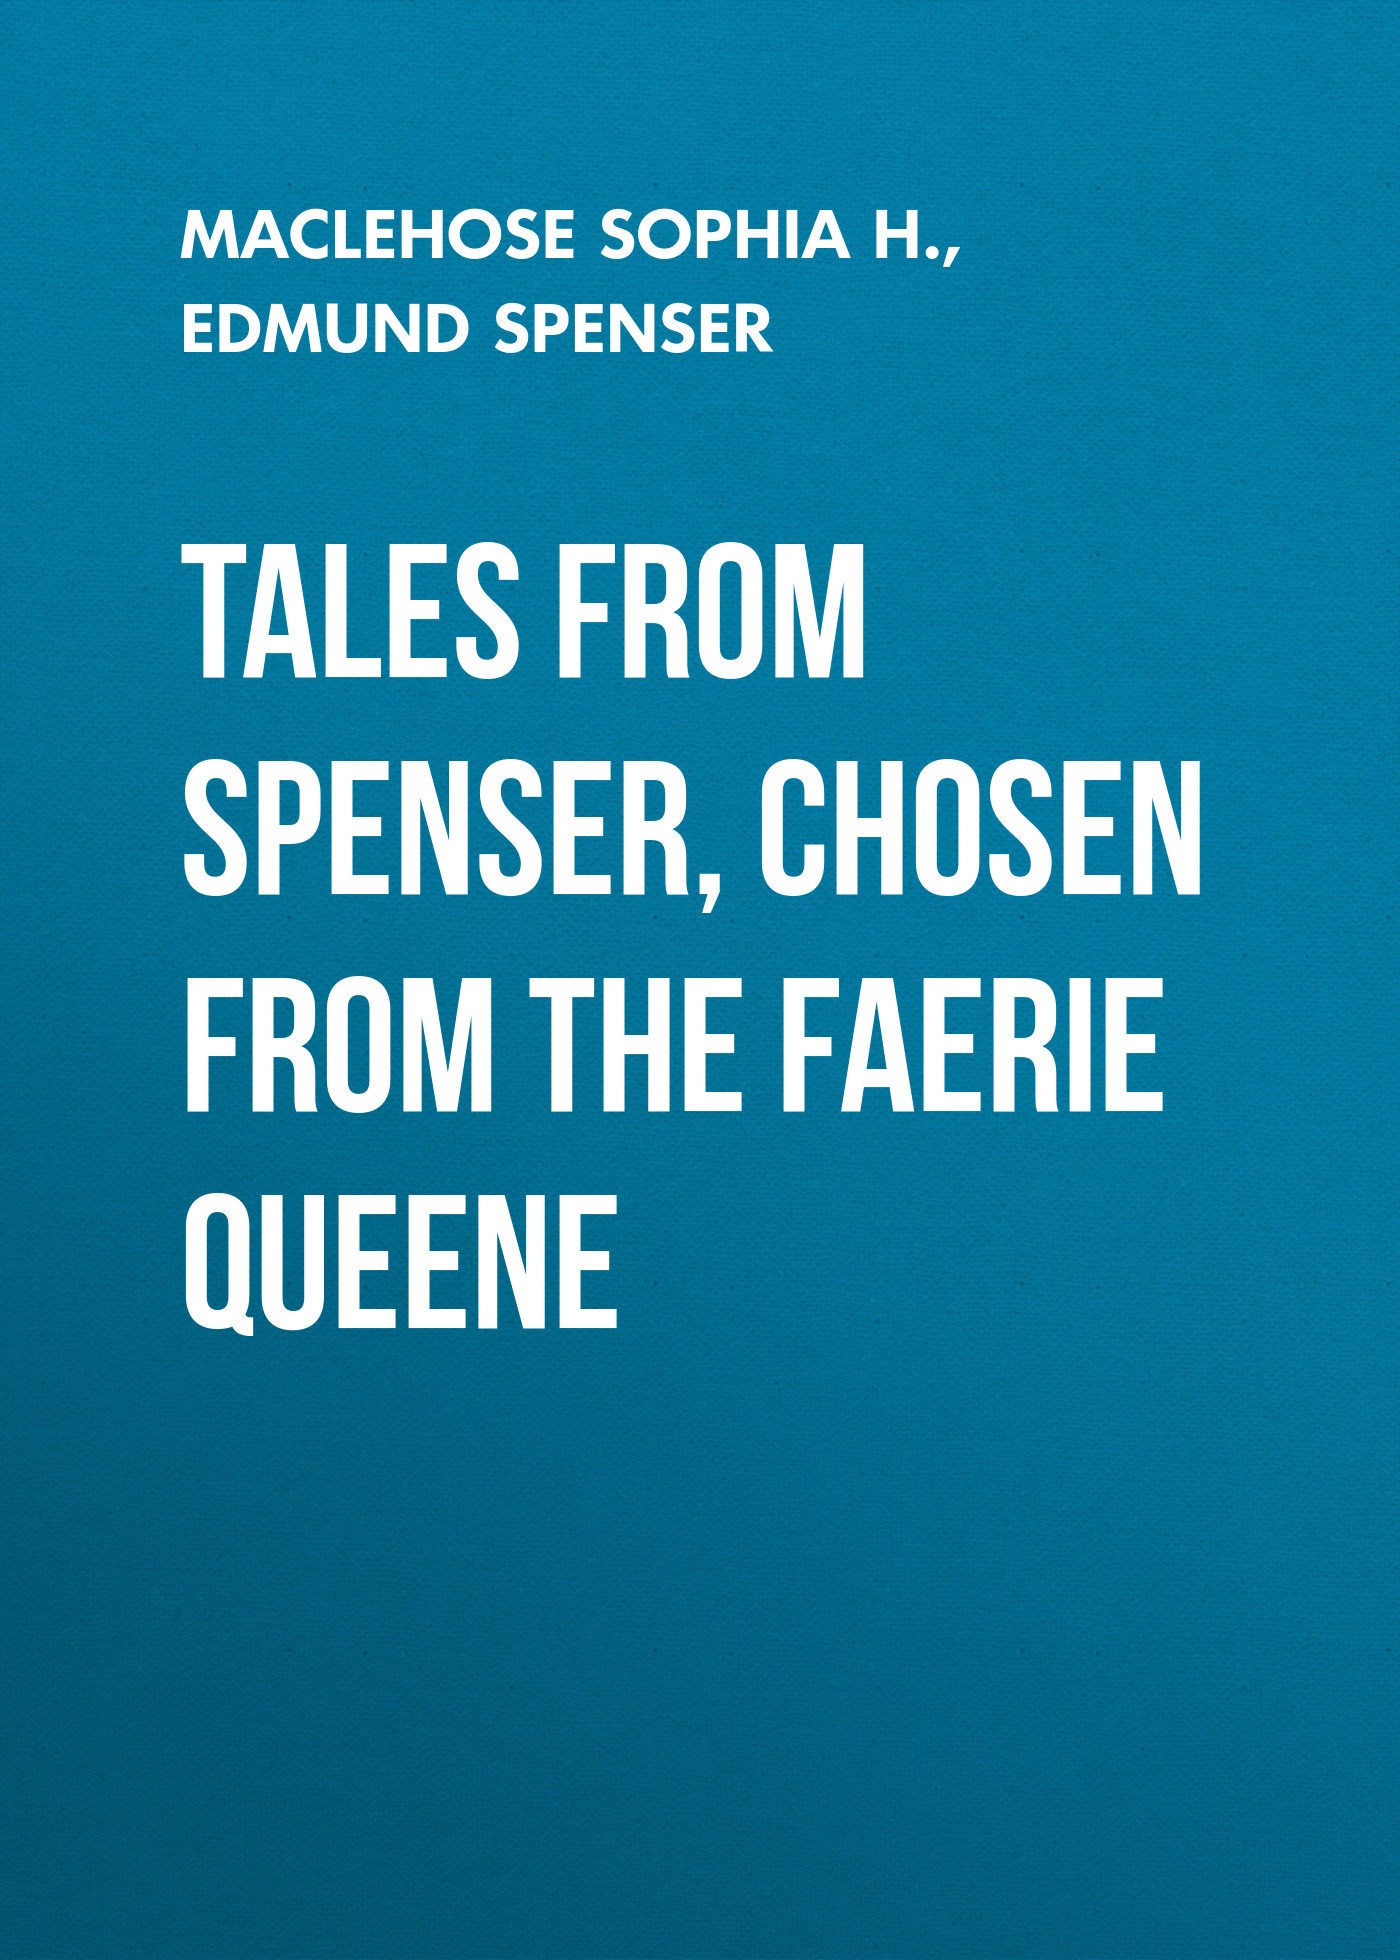 Книга Tales from Spenser, Chosen from the Faerie Queene из серии , созданная Edmund Spenser, Sophia MacLehose, написана в жанре Мифы. Легенды. Эпос, Зарубежная старинная литература, Зарубежная классика, Зарубежные детские книги. Стоимость электронной книги Tales from Spenser, Chosen from the Faerie Queene с идентификатором 25474975 составляет 0 руб.